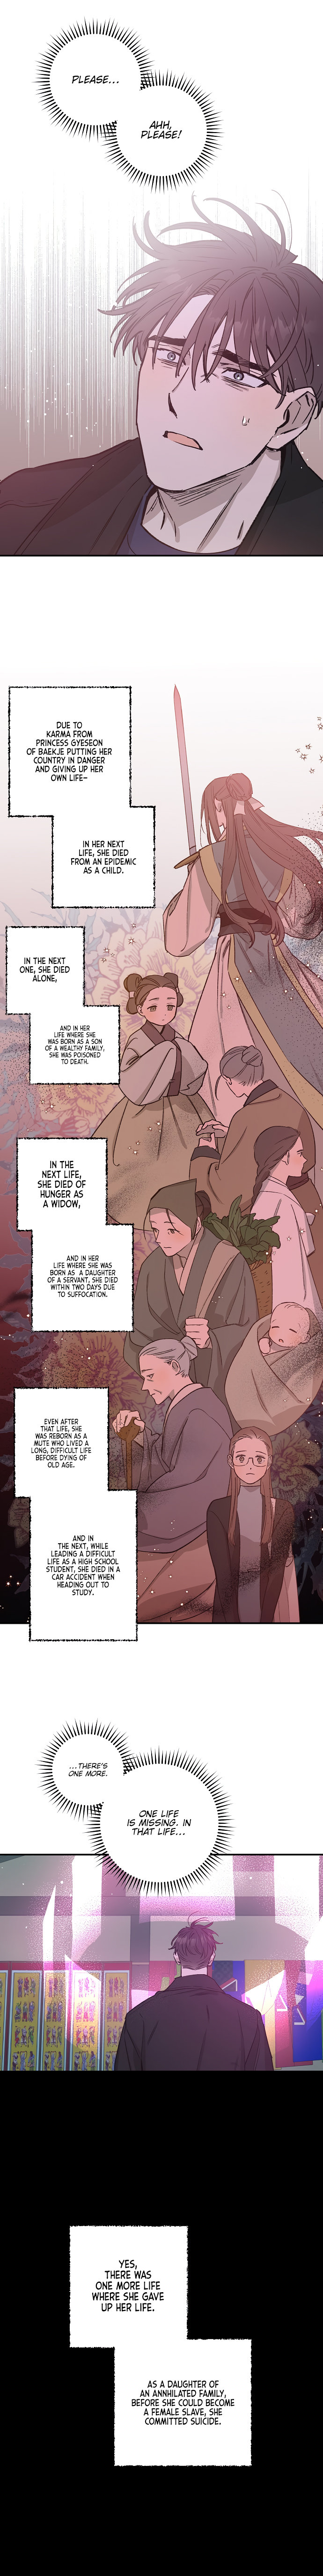 Onsaemiro - Chapter 26 Page 6